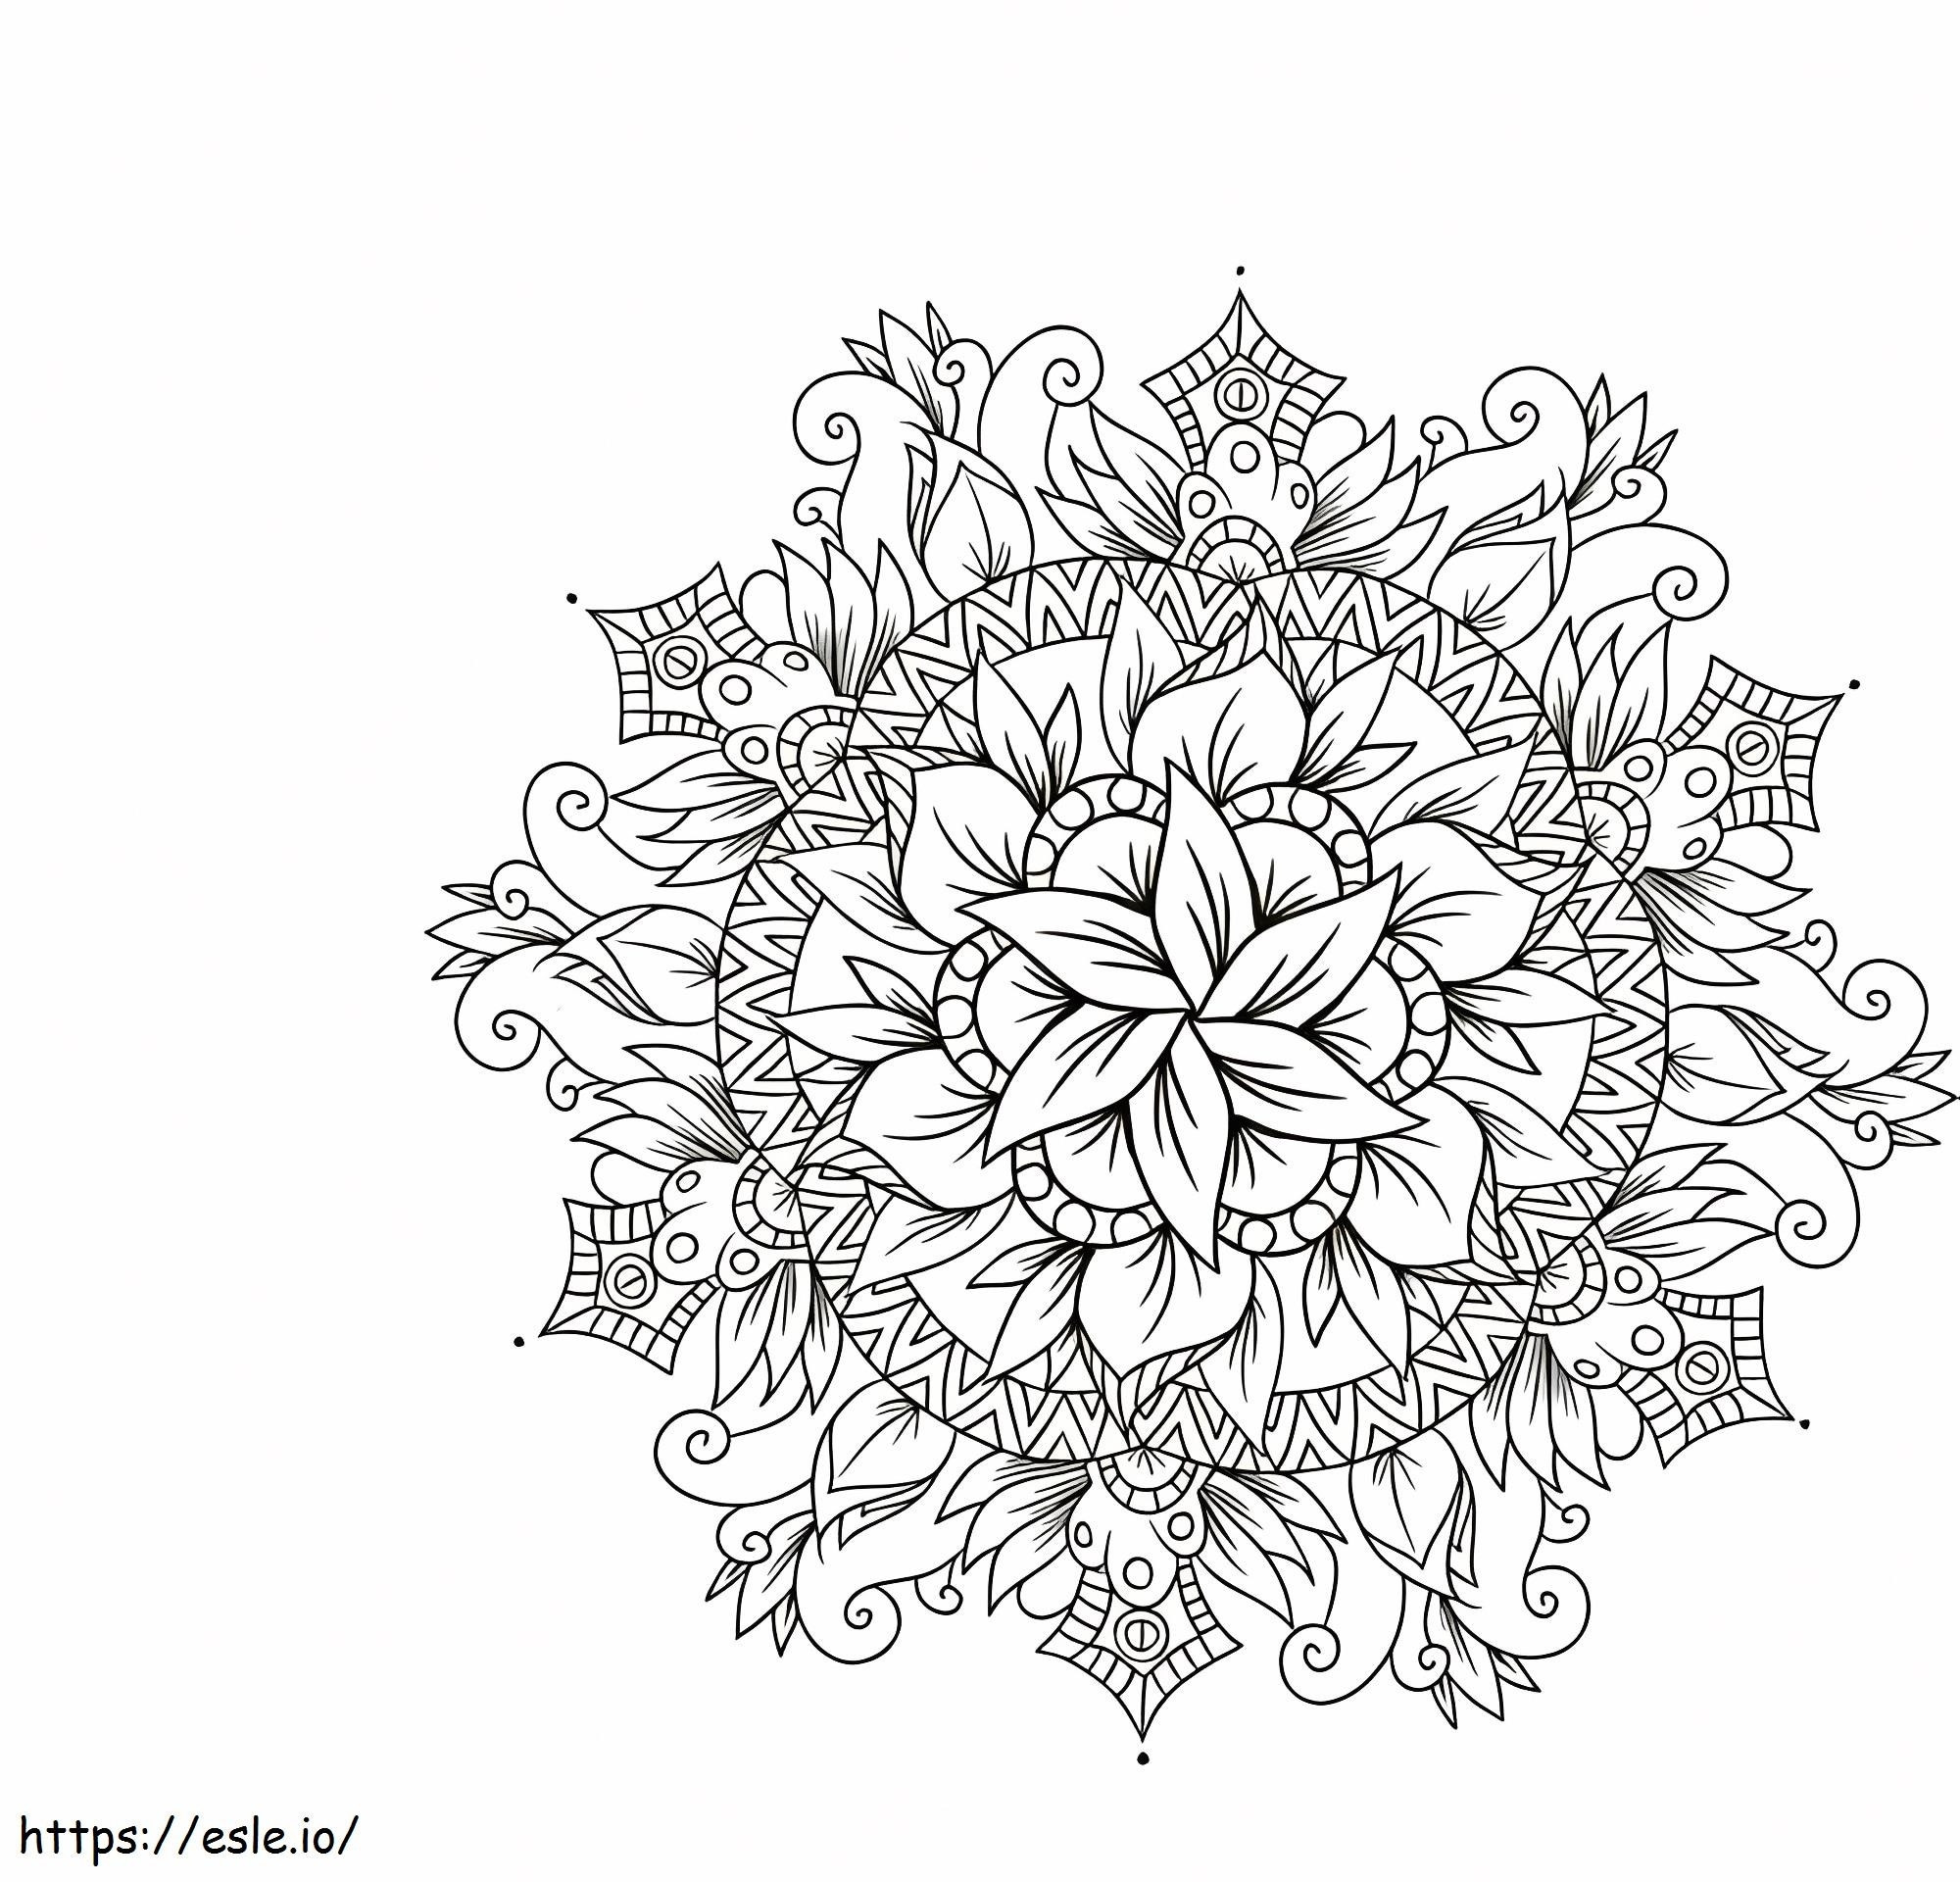 1559702255 Impresionante Mandala de Flores A4 para colorear